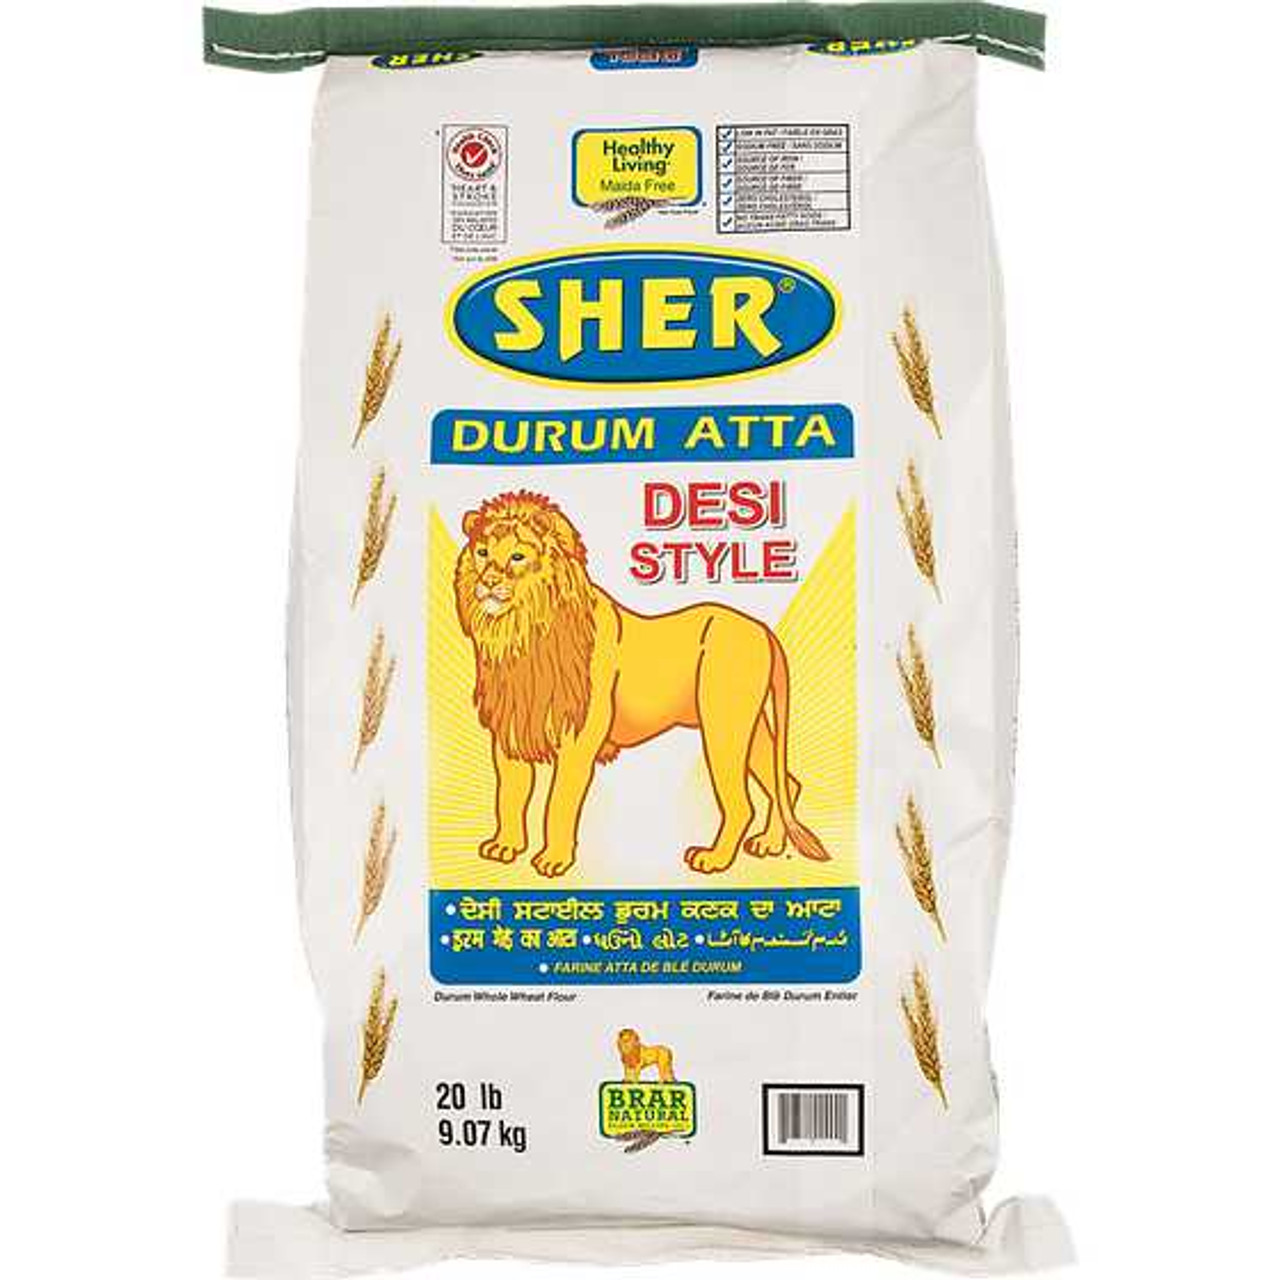 BRAR'S Desi Style Durum Flour 9.07 kg BRAR'S Chicken Pieces